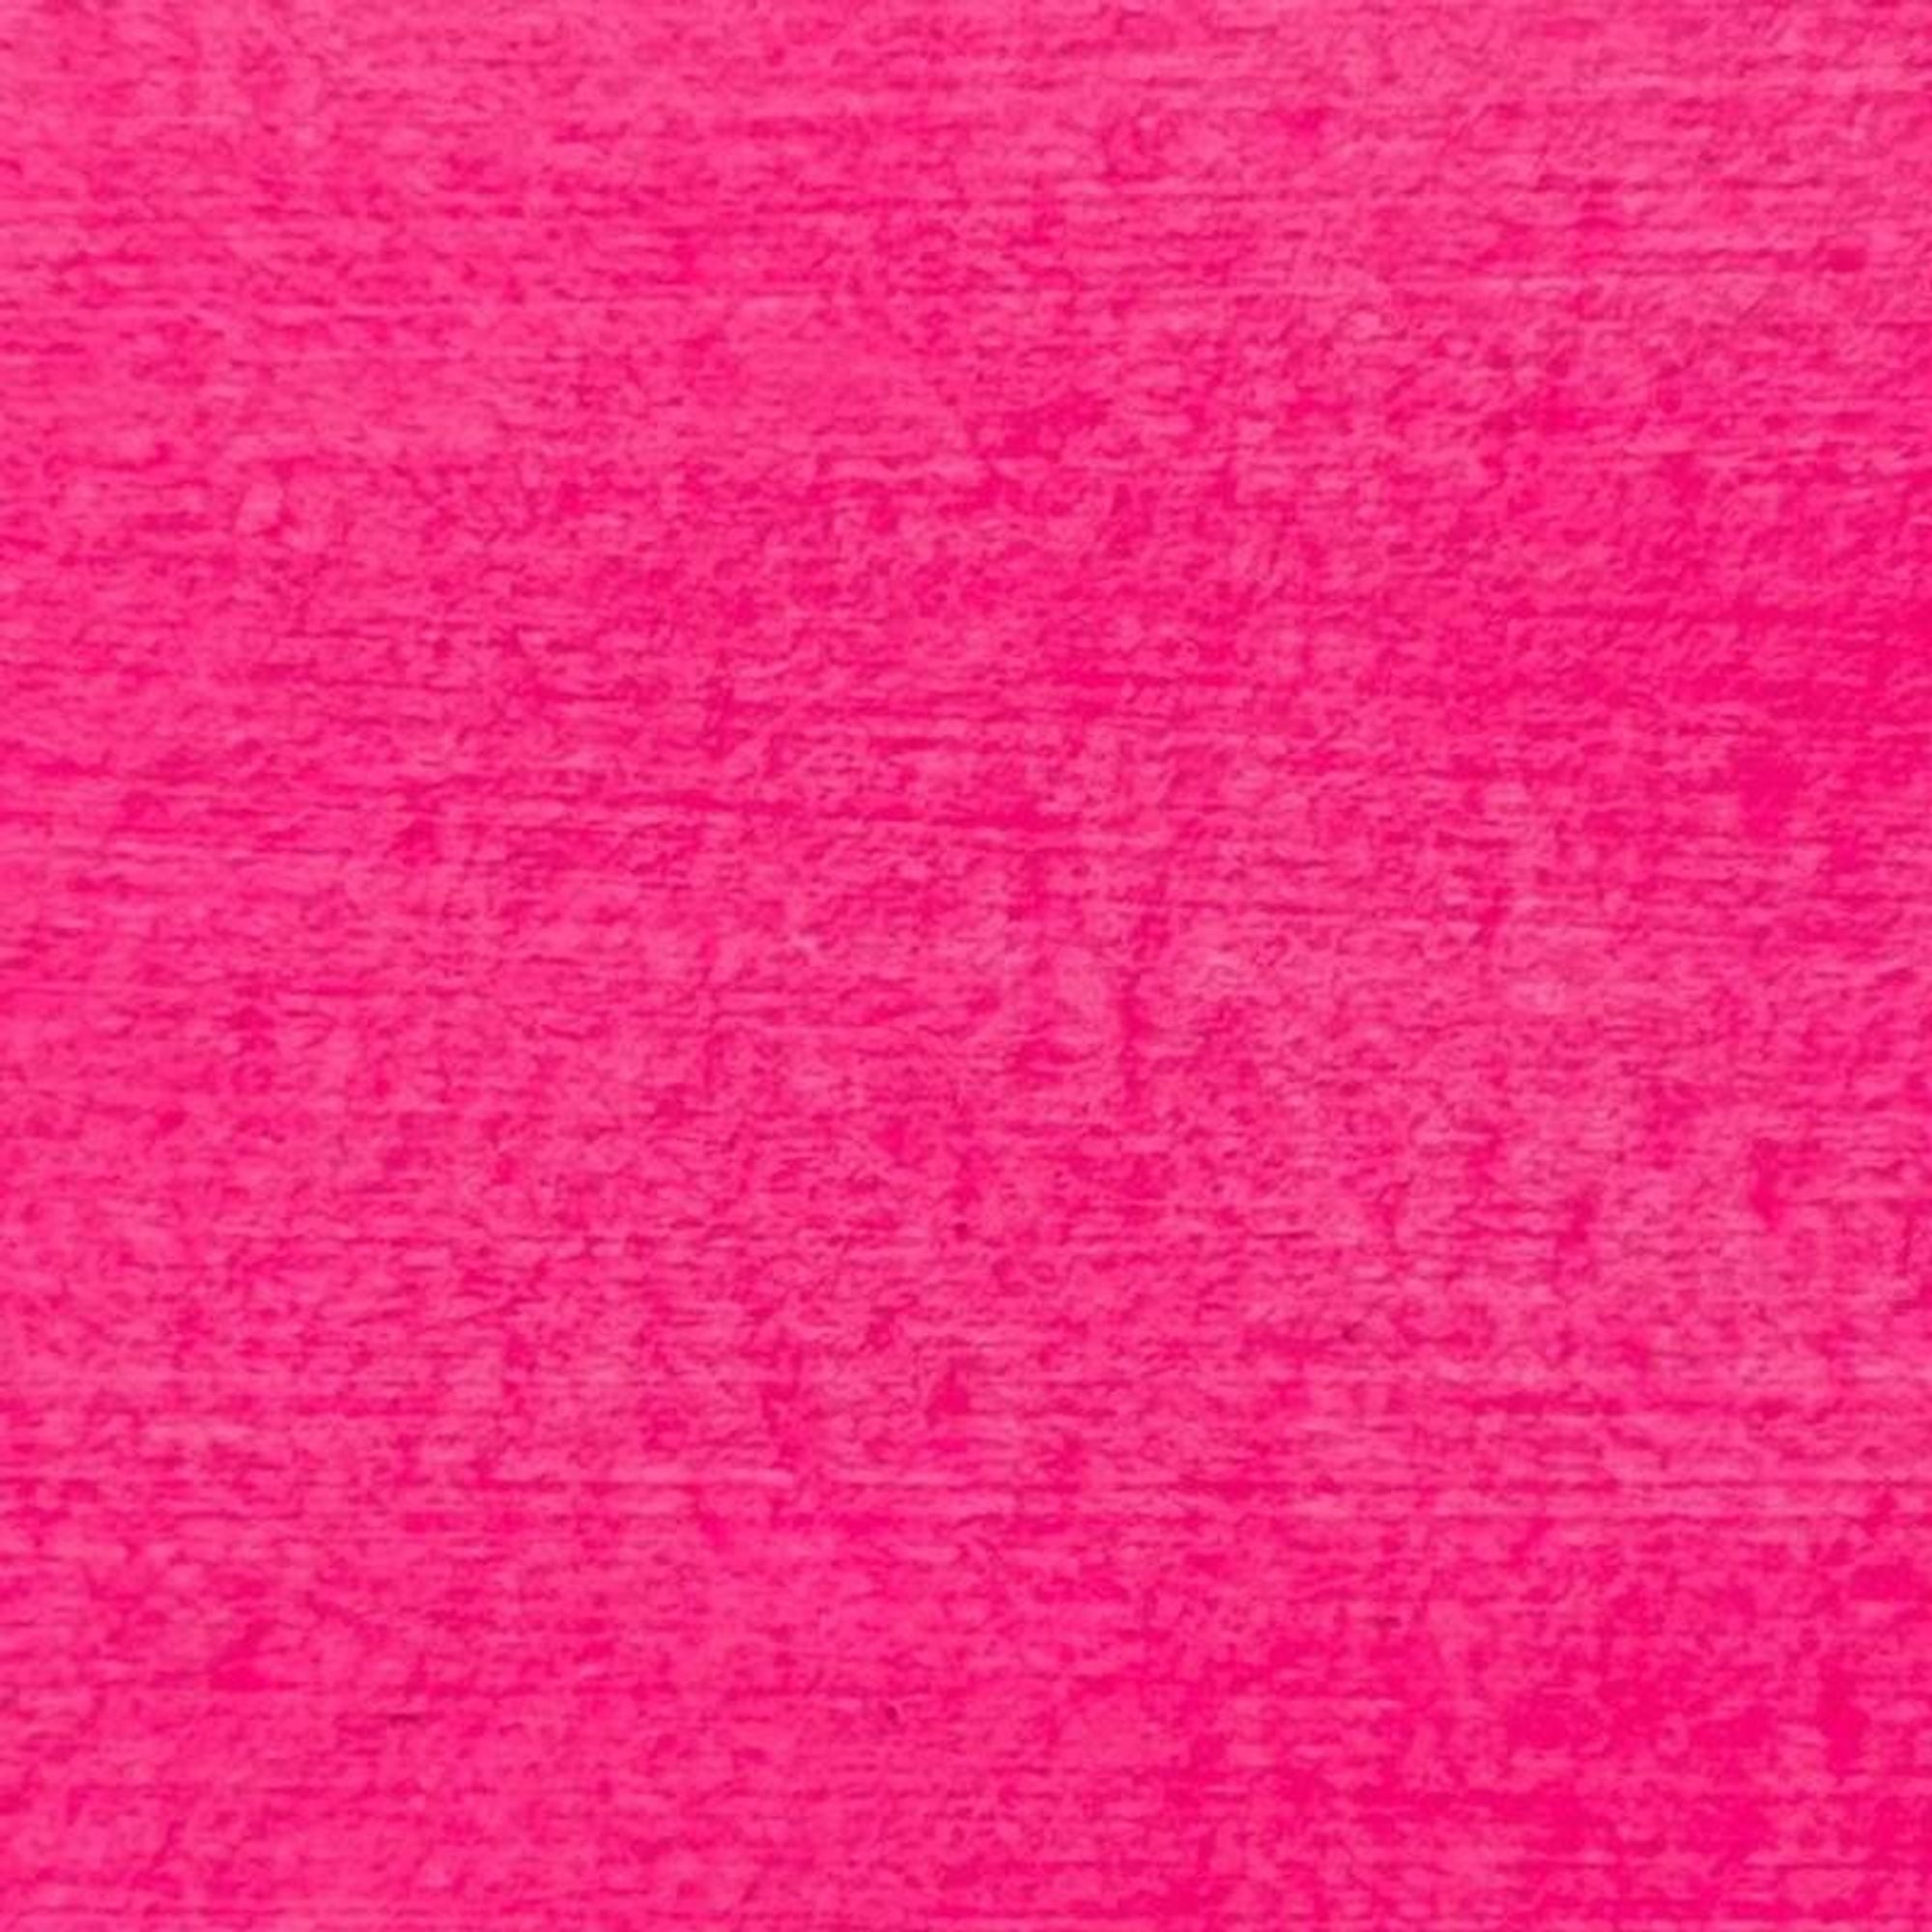 #colour_shocking pink